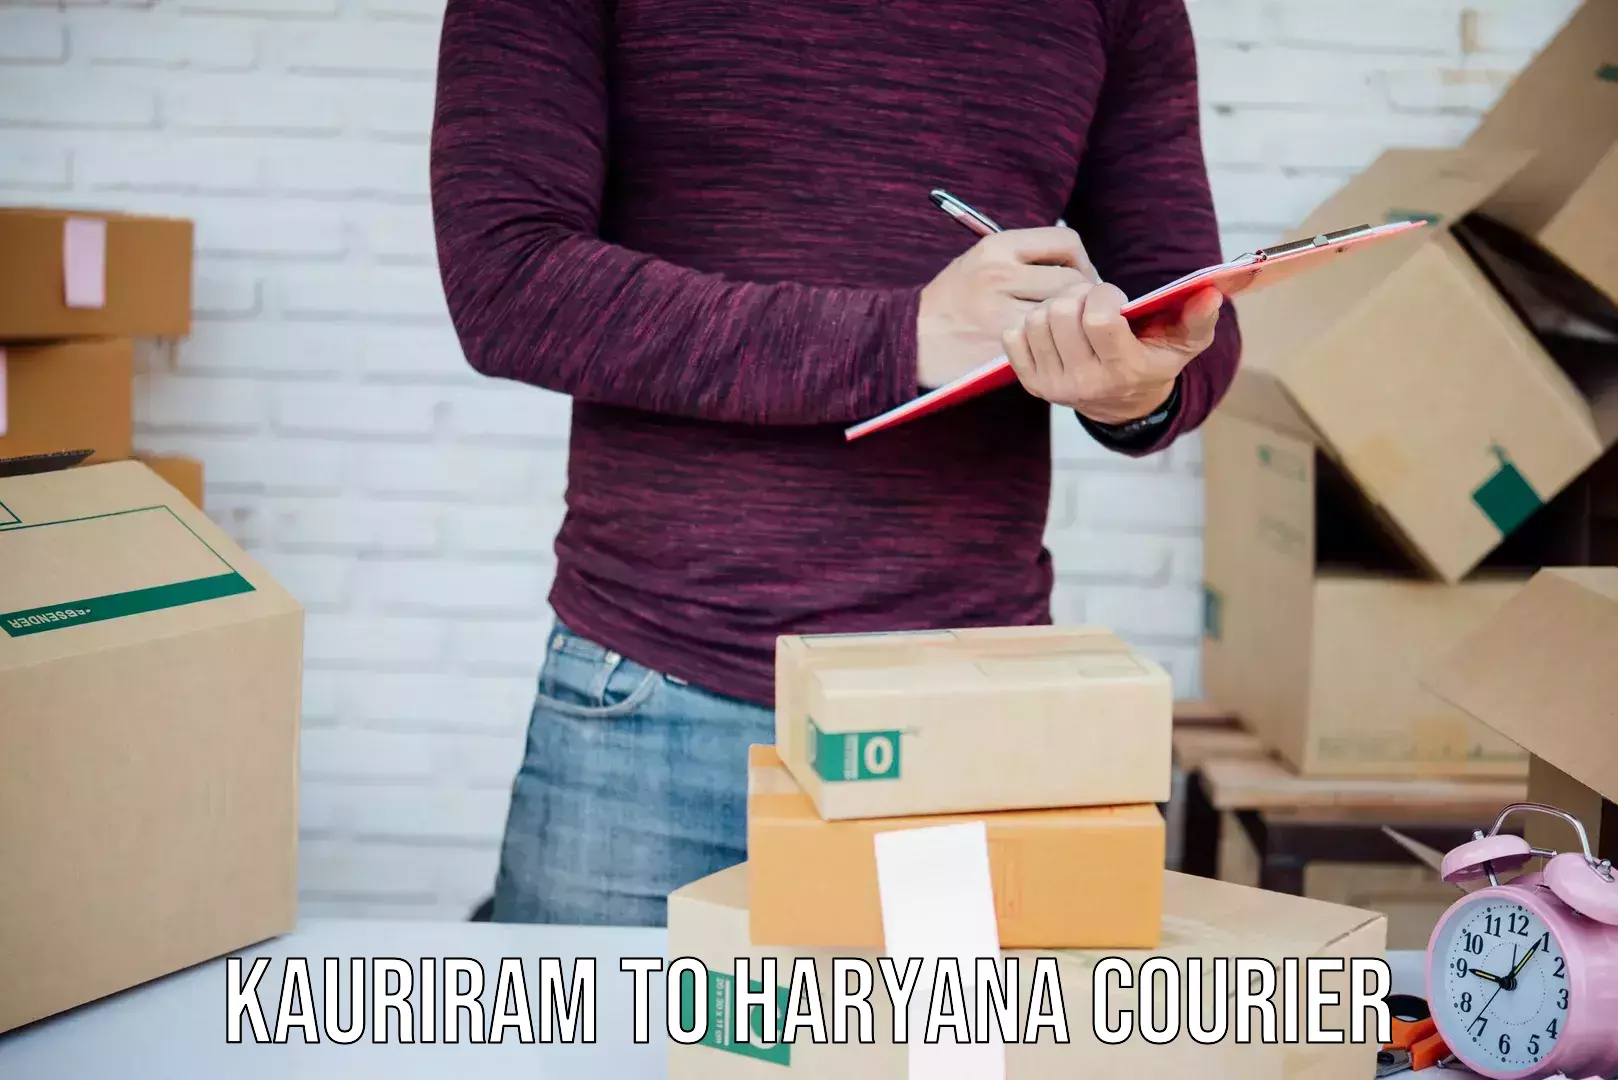 International courier networks Kauriram to Haryana